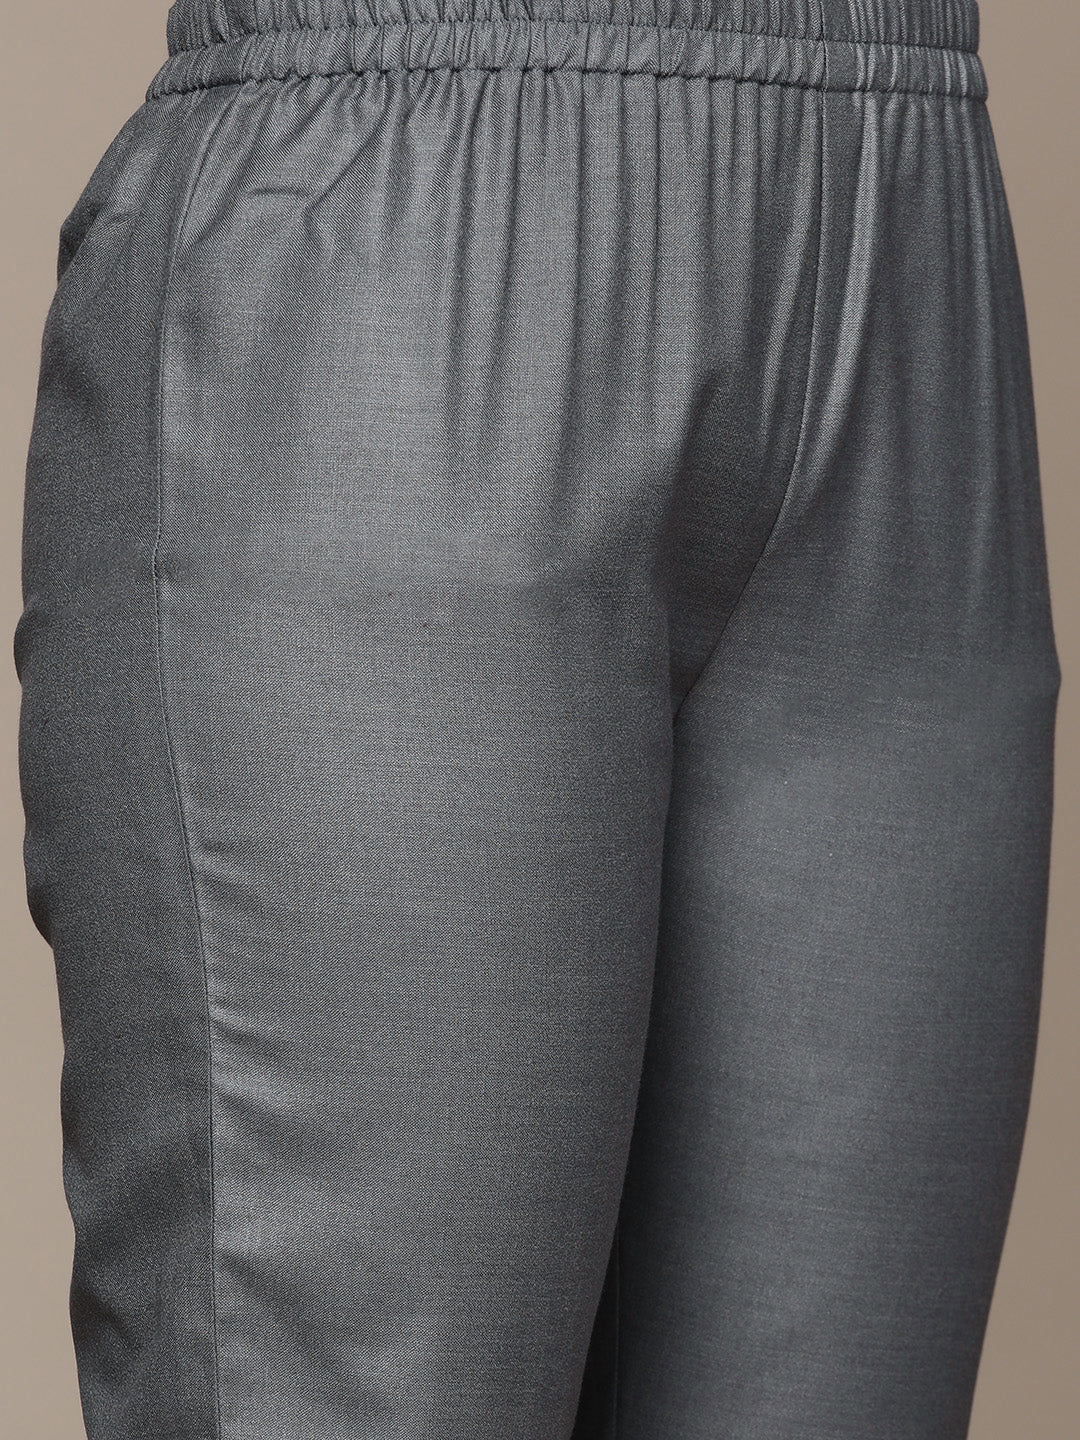 Anubhutee Women's Dark Grey Gotta Patti Dori Tassel Kurta set with Trousers